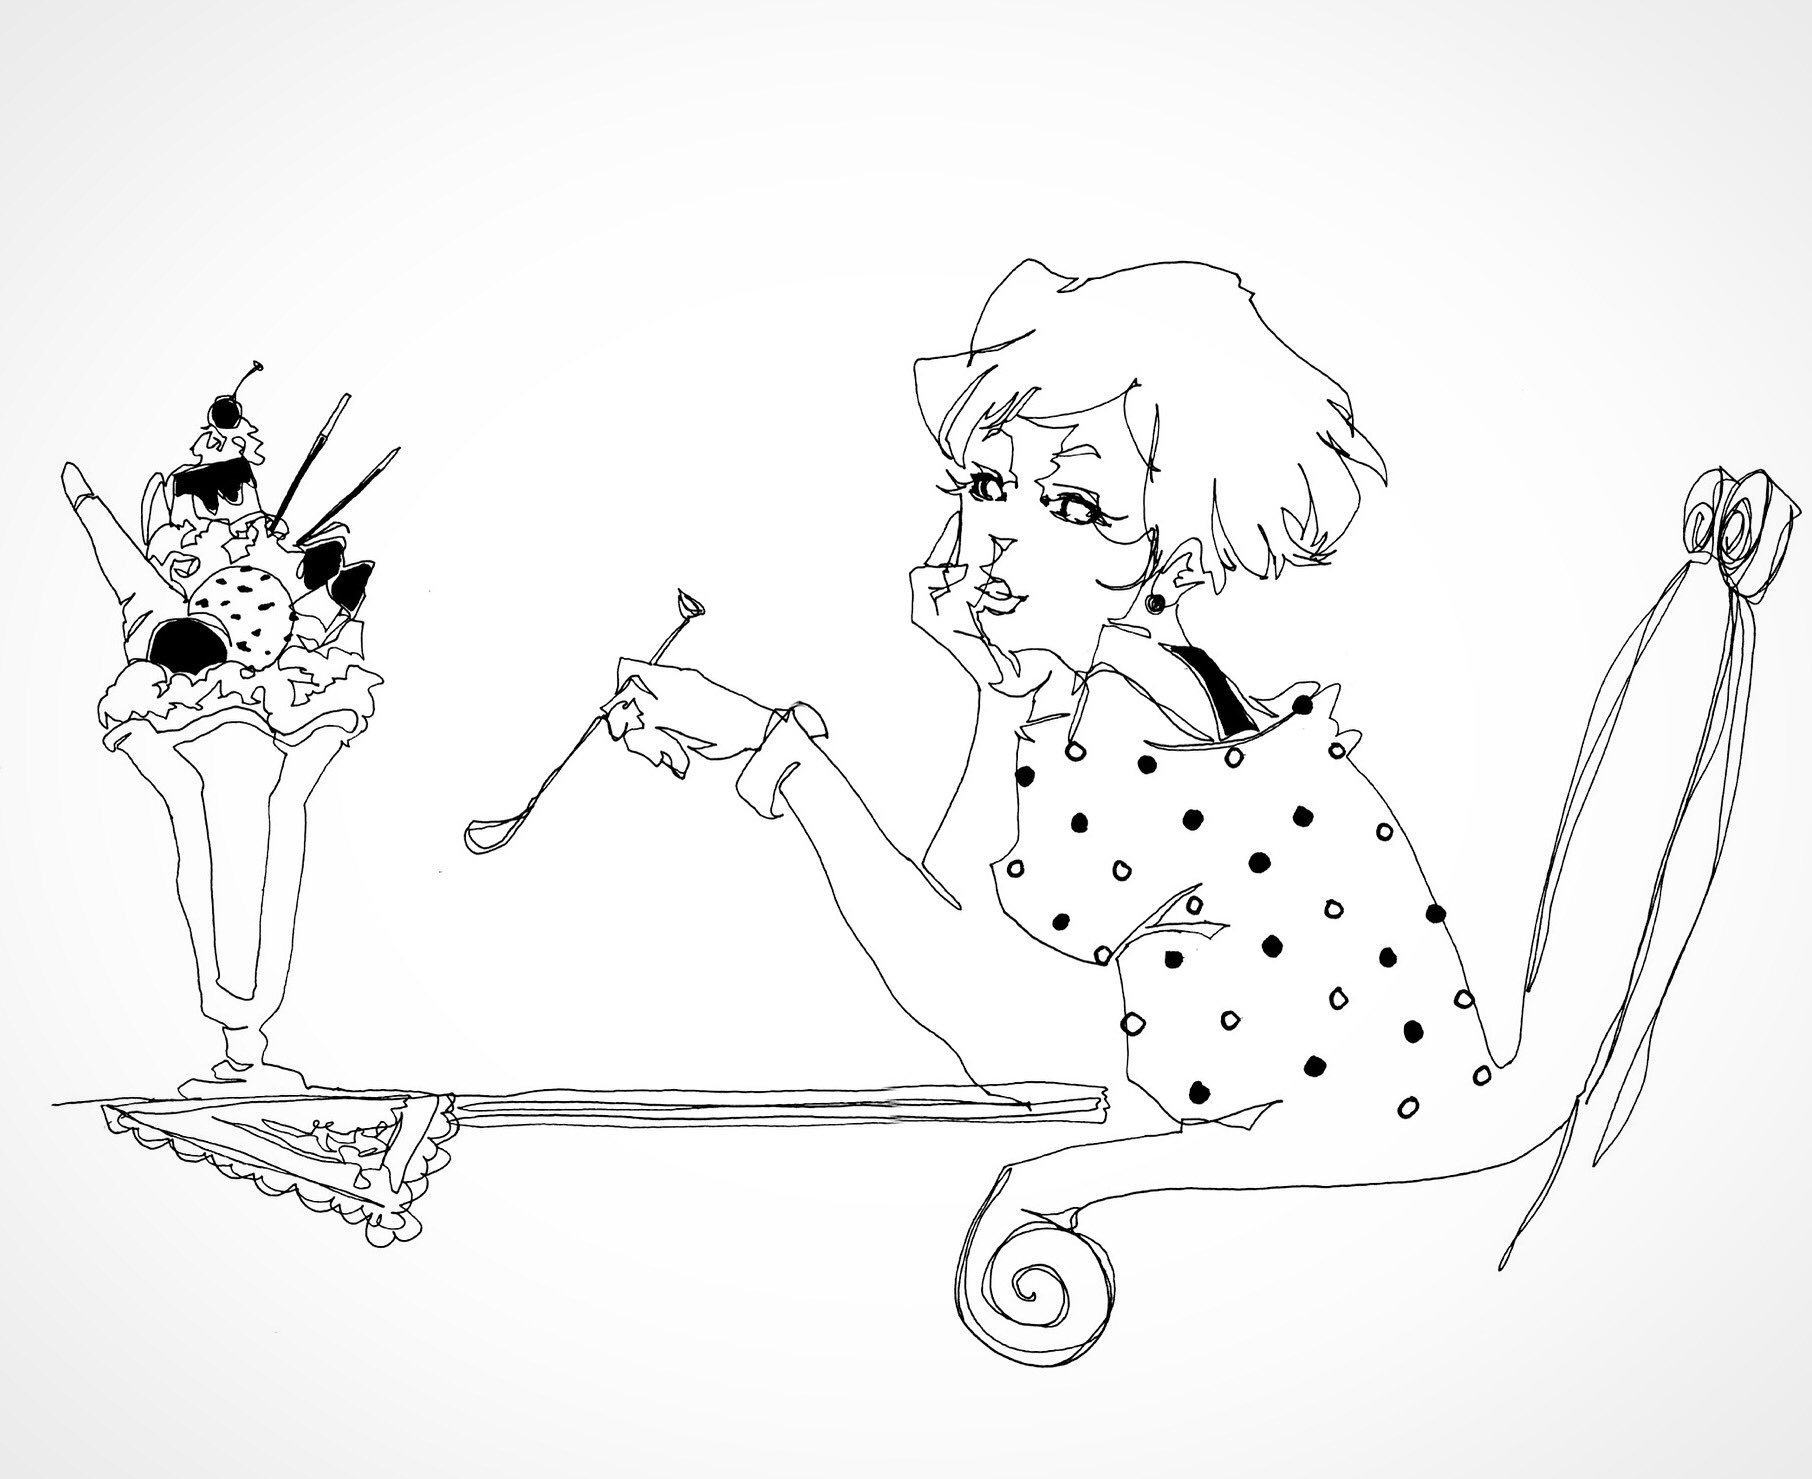 クロセシンゴ 過去作品 一筆描きで女の子とパフェ 絵 イラスト アナログ 線画 ペン画 モノクロ 白黒 一筆書き Illustration Art Artwork Draw Drawing Linedrawing Pen Blackandwhite T Co Kquyf6pxcl Twitter